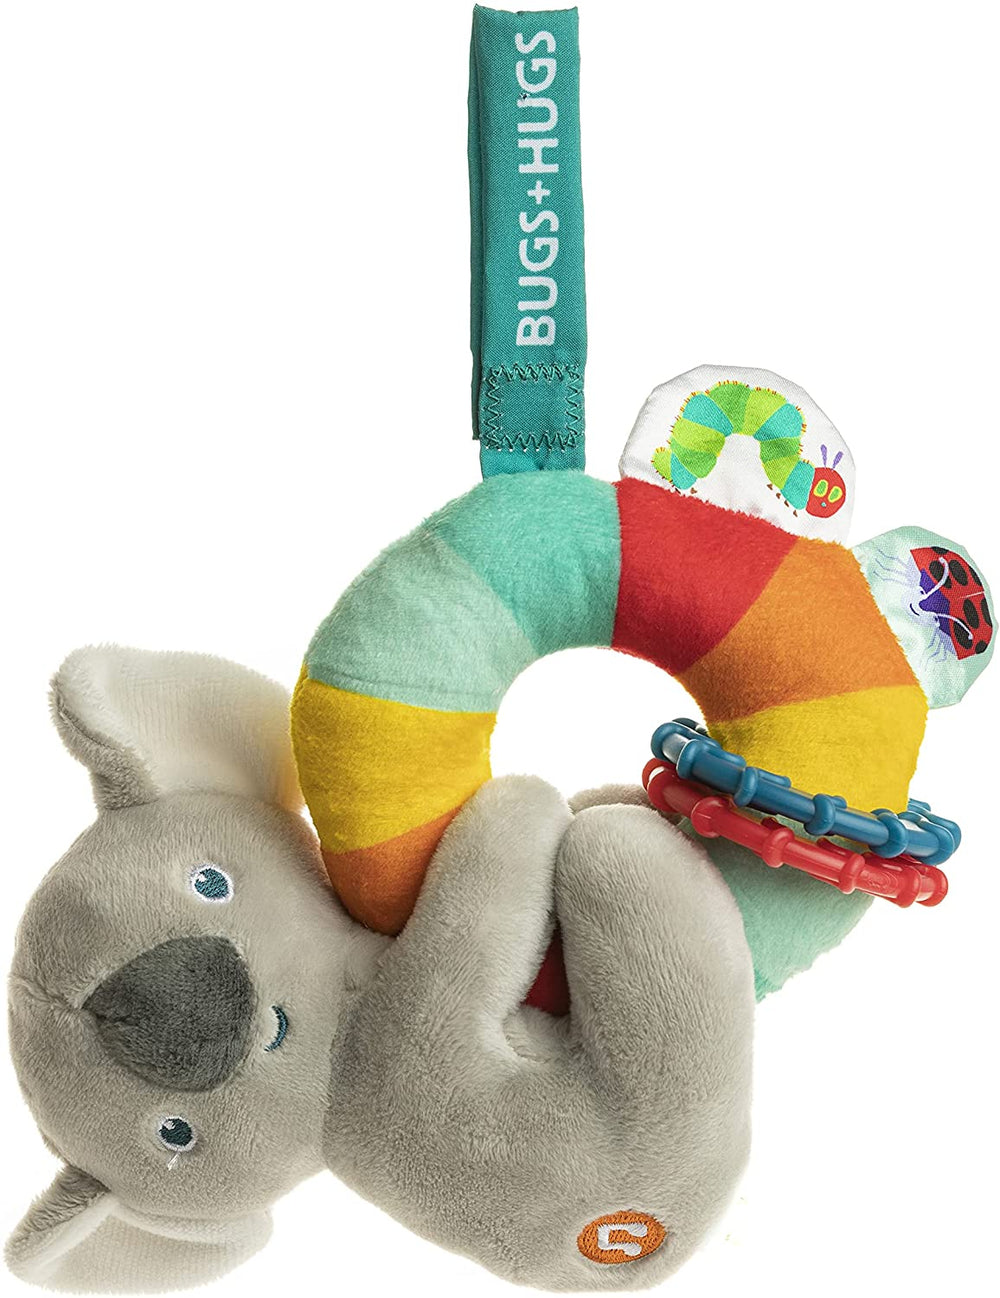 World of Eric Carle Koala Activity Toy